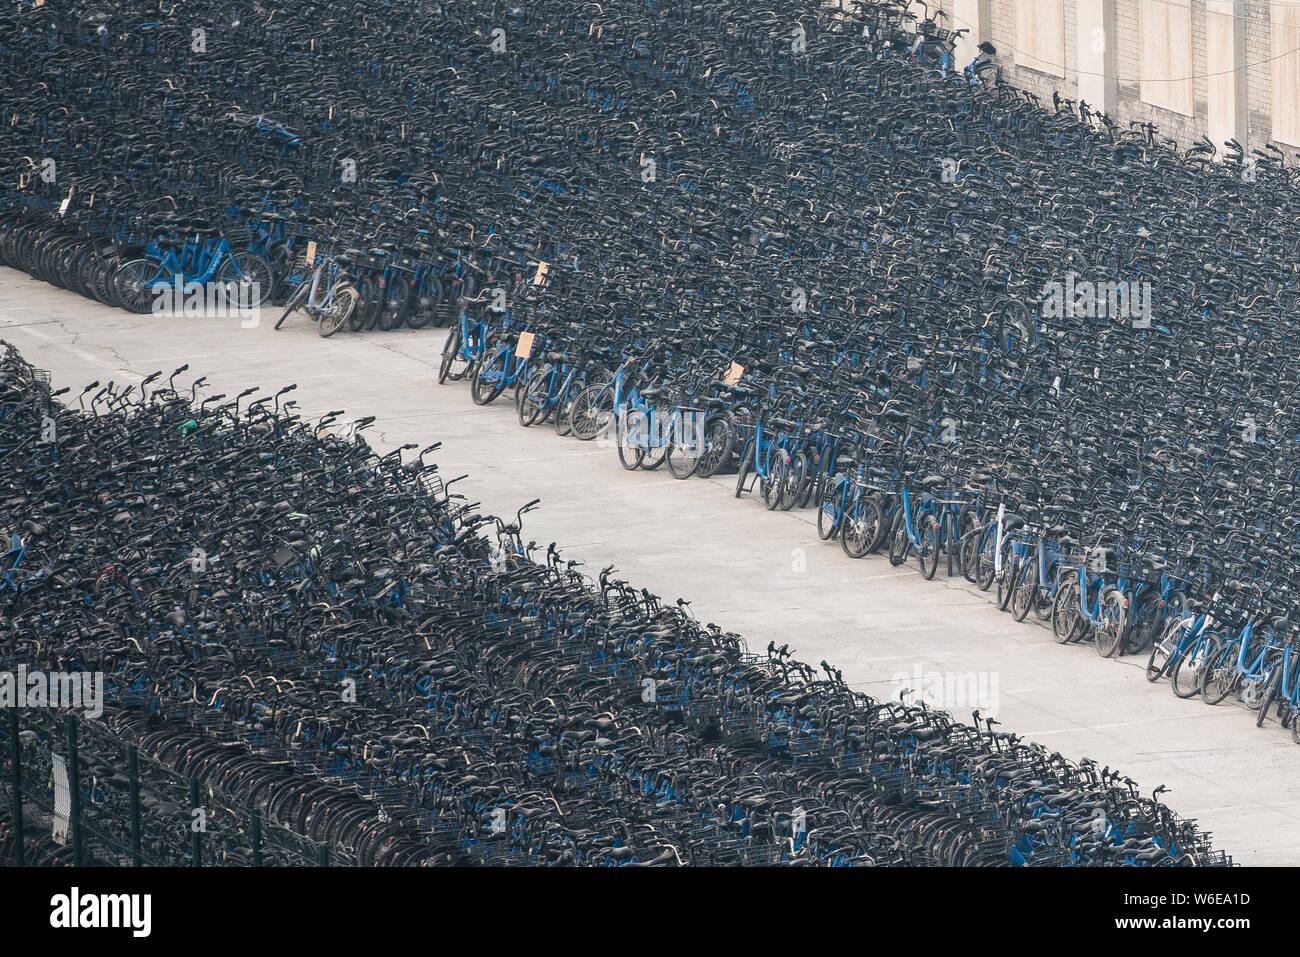 Luftaufnahme von Bluegogo Gemeinschafts-Fahrräder der chinesischen Taxifahrer hageln und Car-sharing service Didi Chuxing cramming einen Parkplatz in Peking, China, 28. Febr. Stockfoto